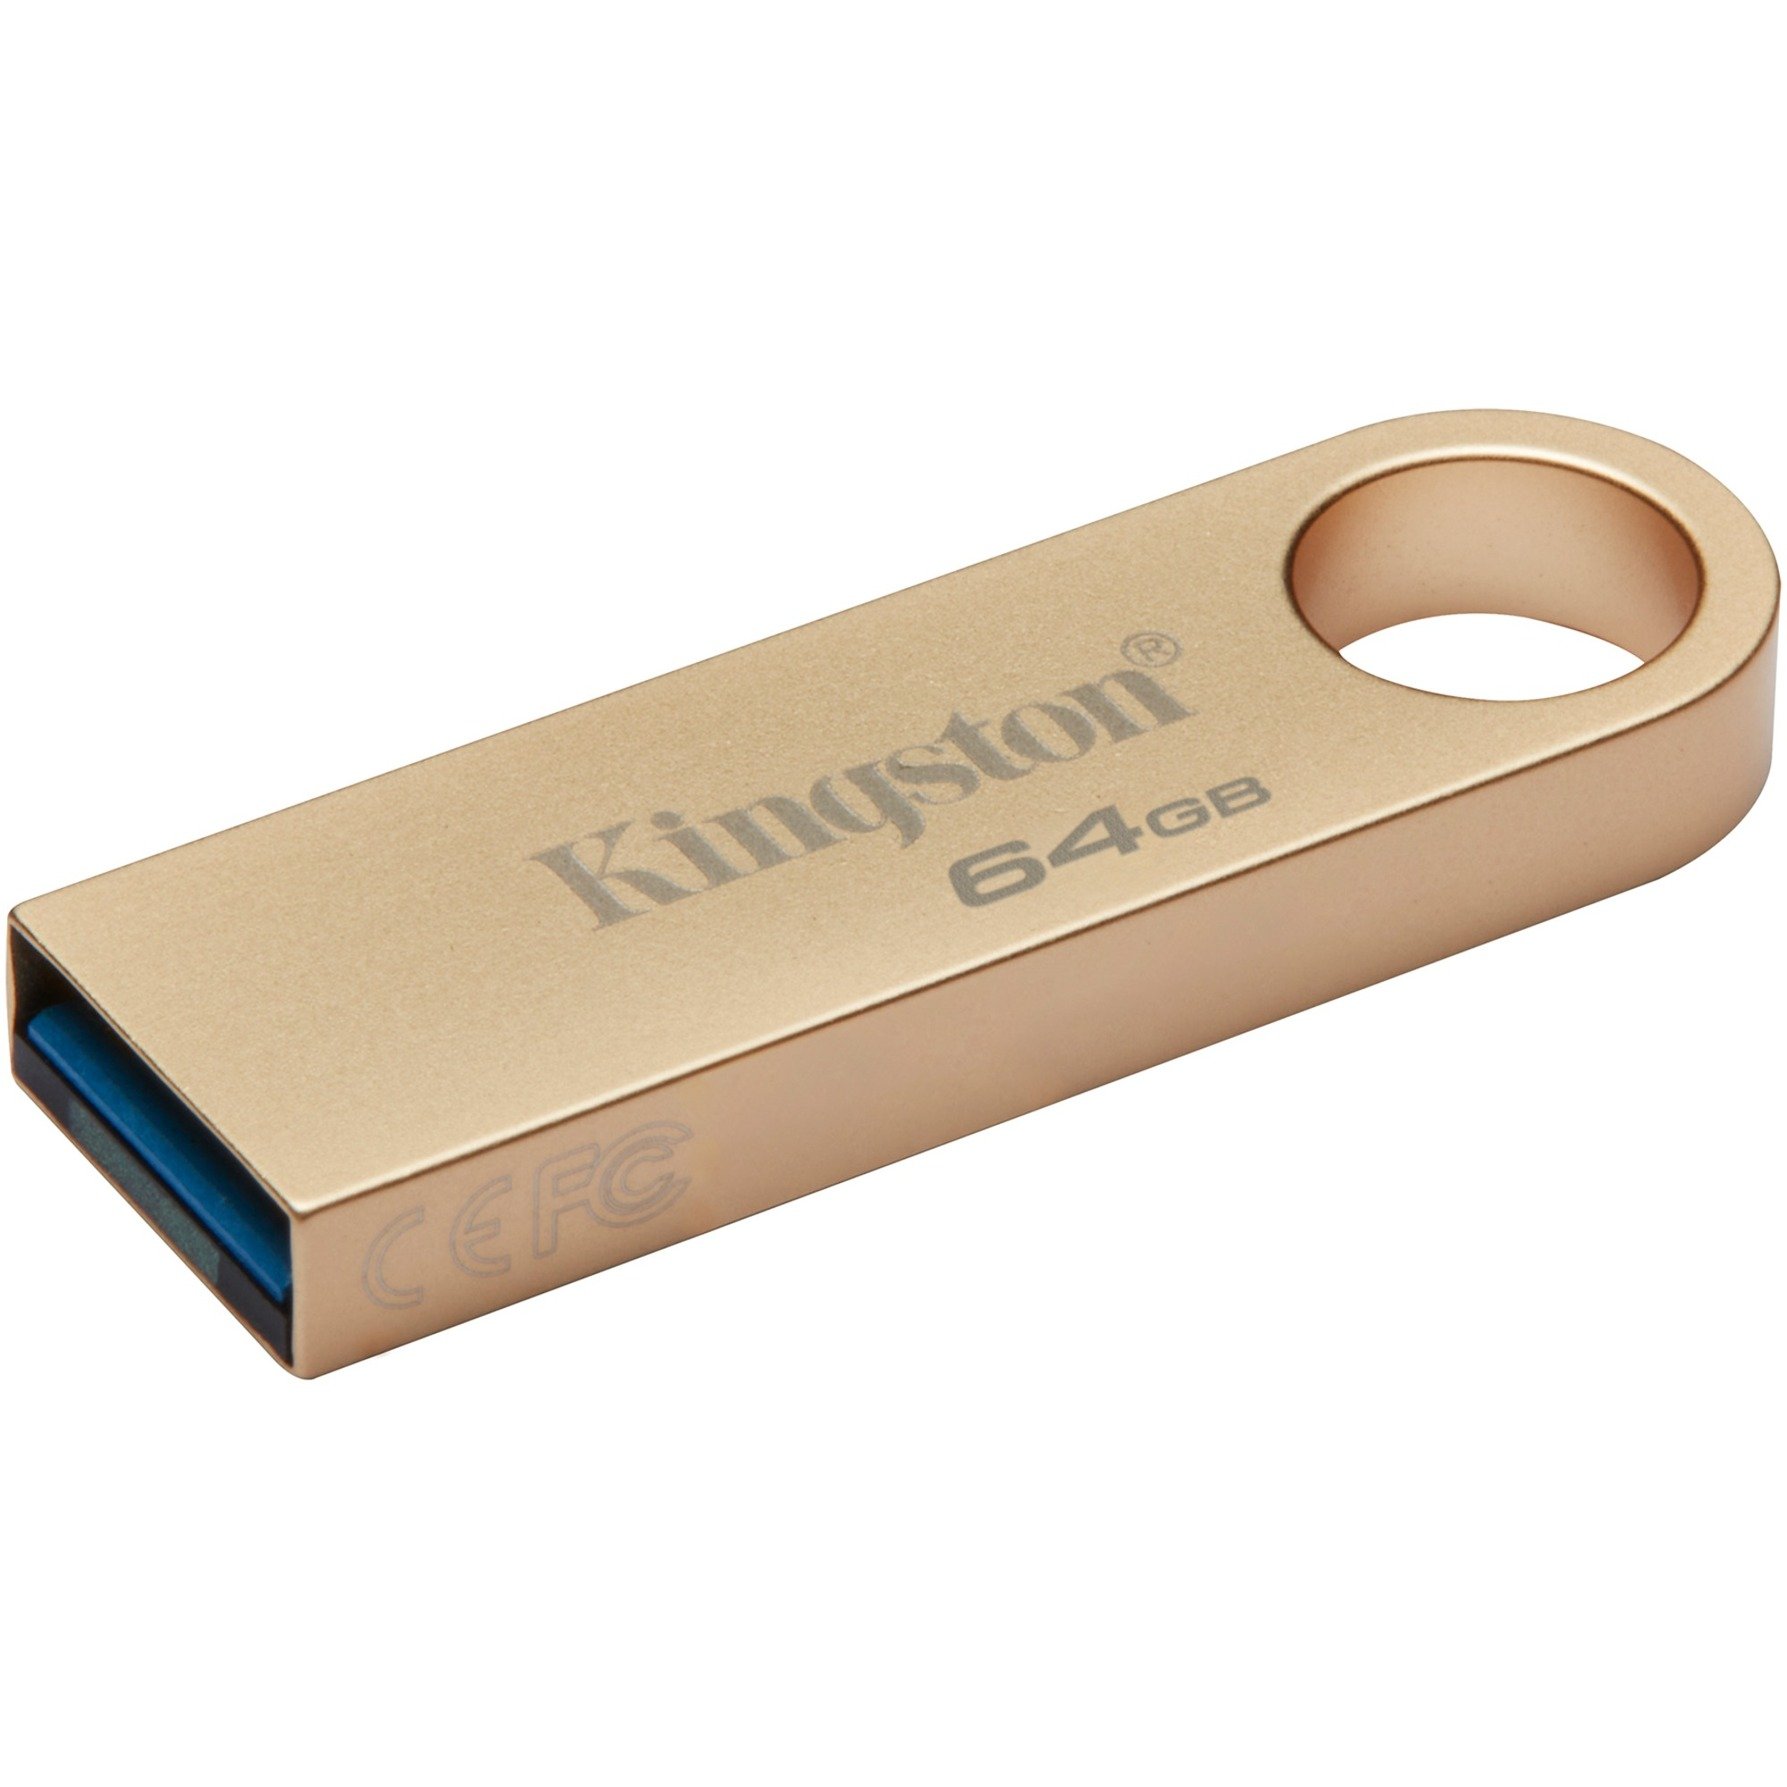 DataTraveler SE9 G3 64 GB, USB-Stick von Kingston